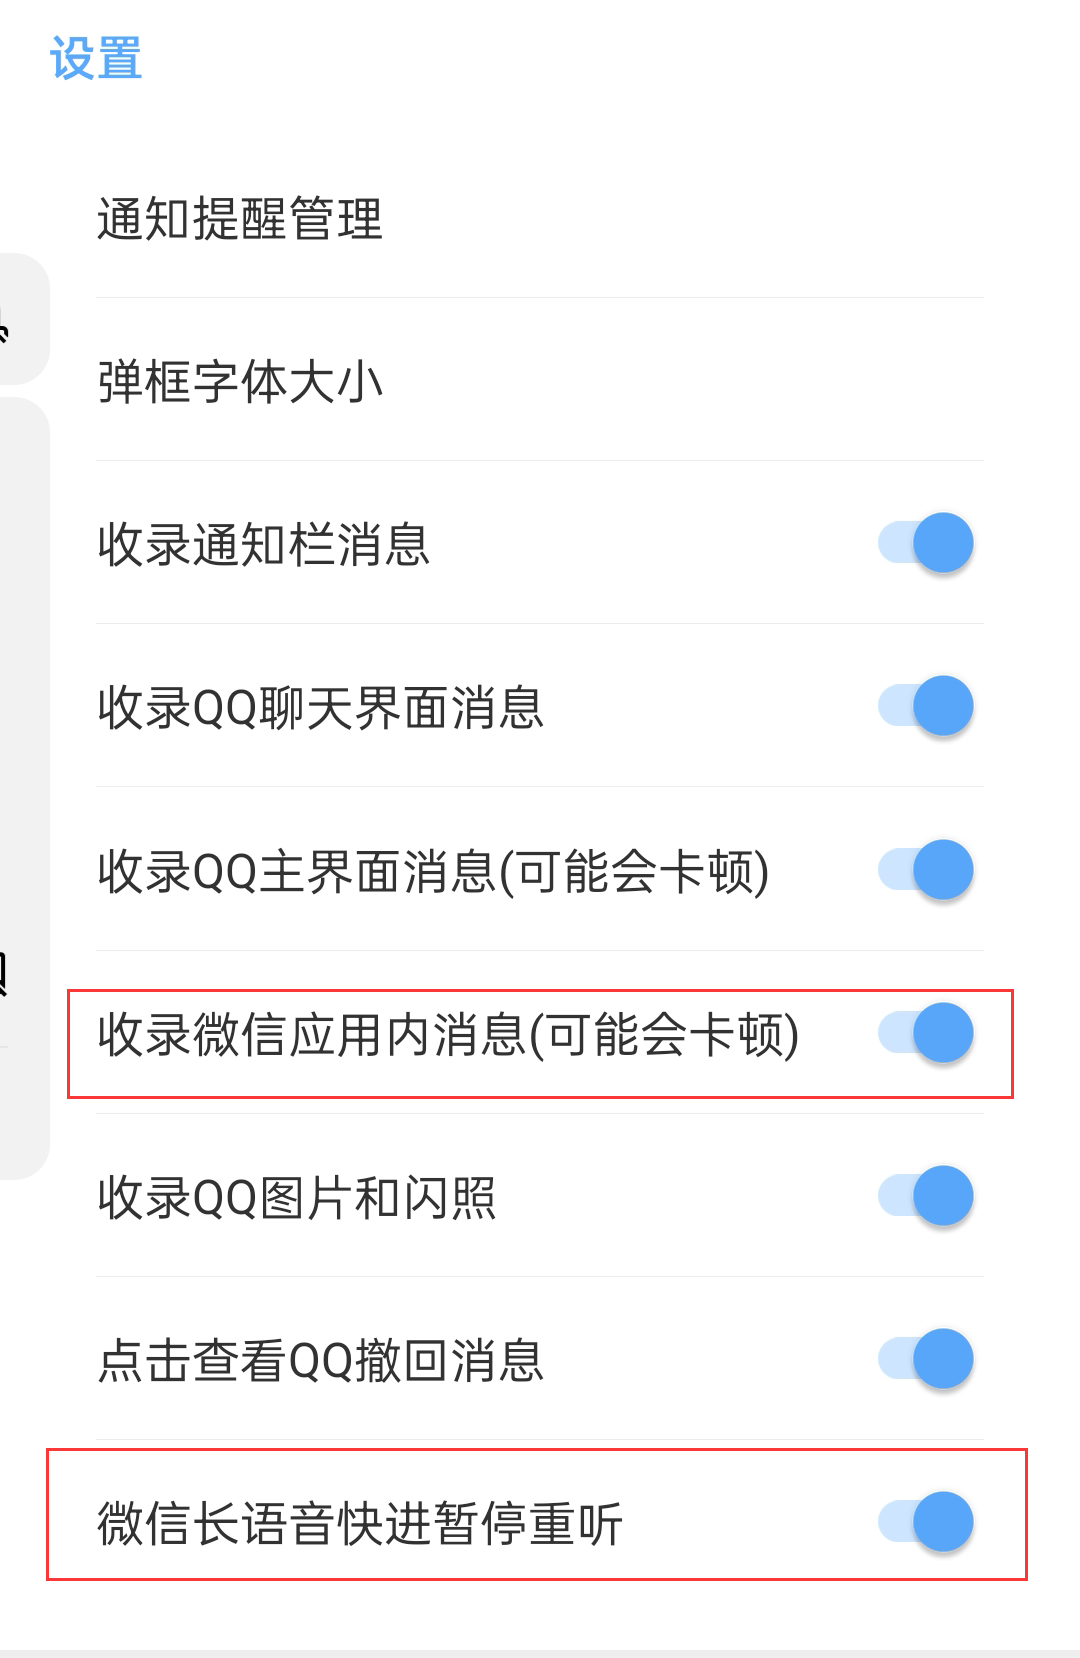 怎么查看 QQ 上撤回的图片？ - 知乎